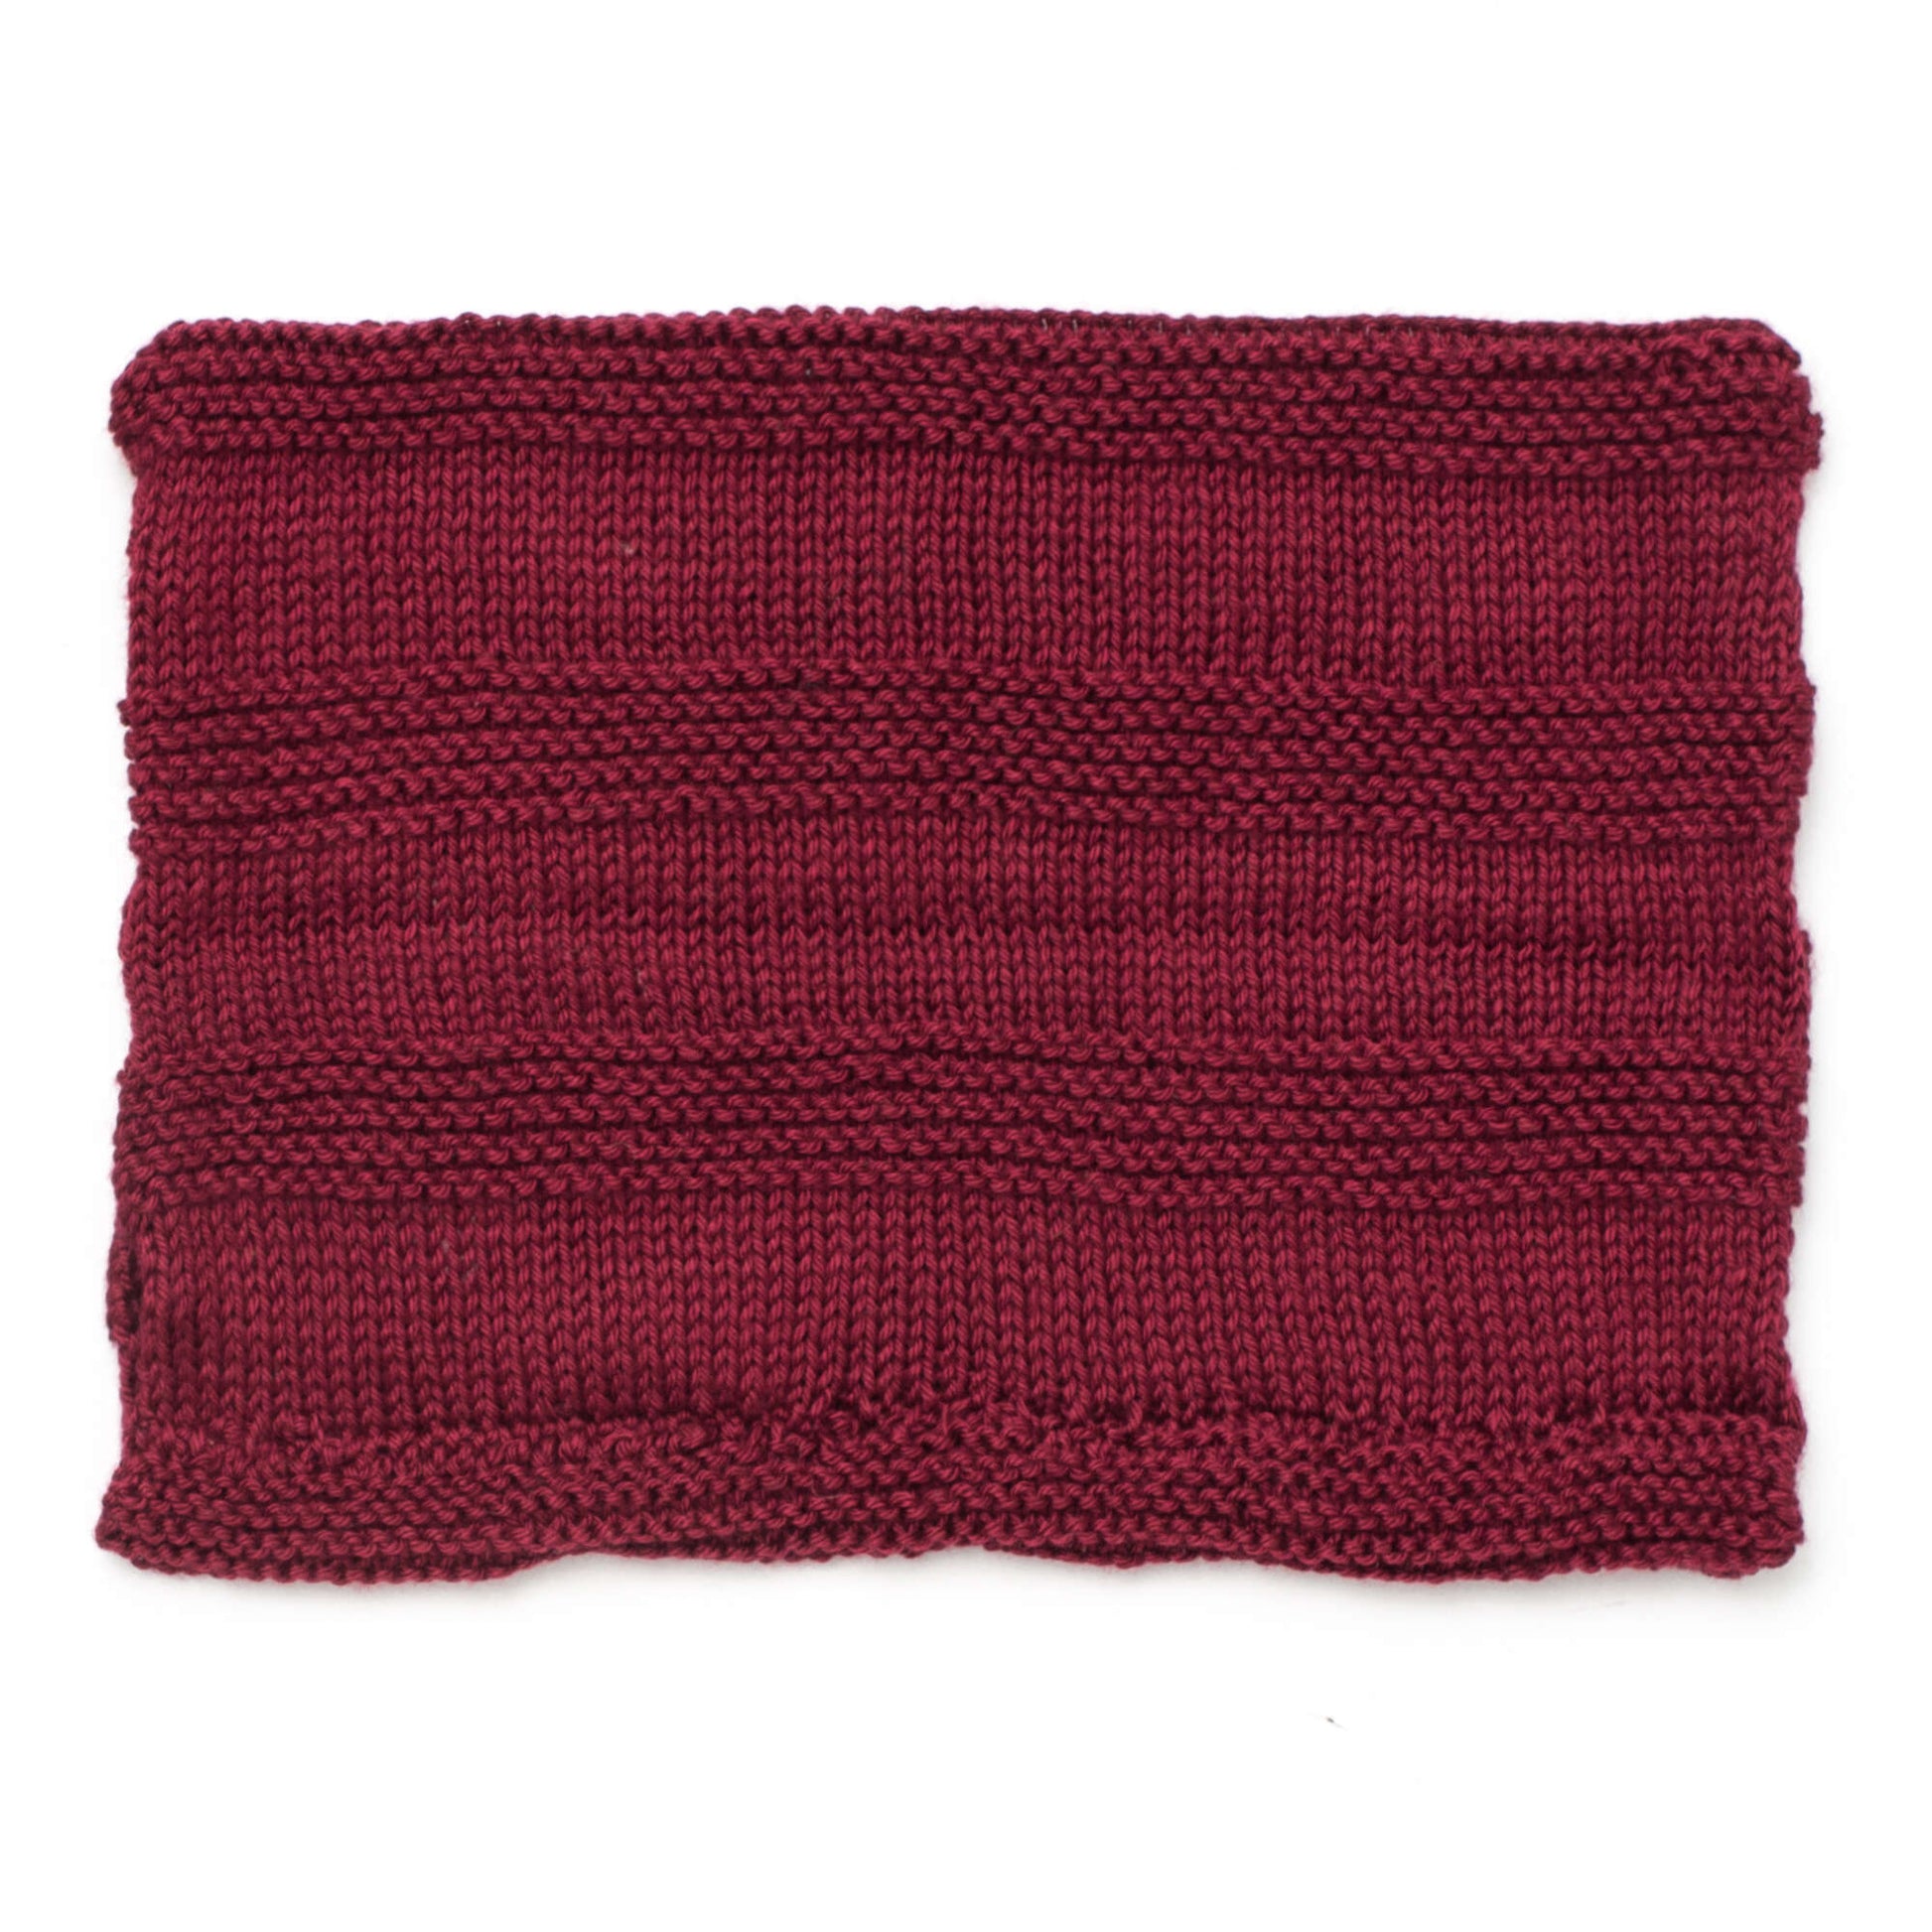 Free Caron Ridged Cowl Knit Pattern